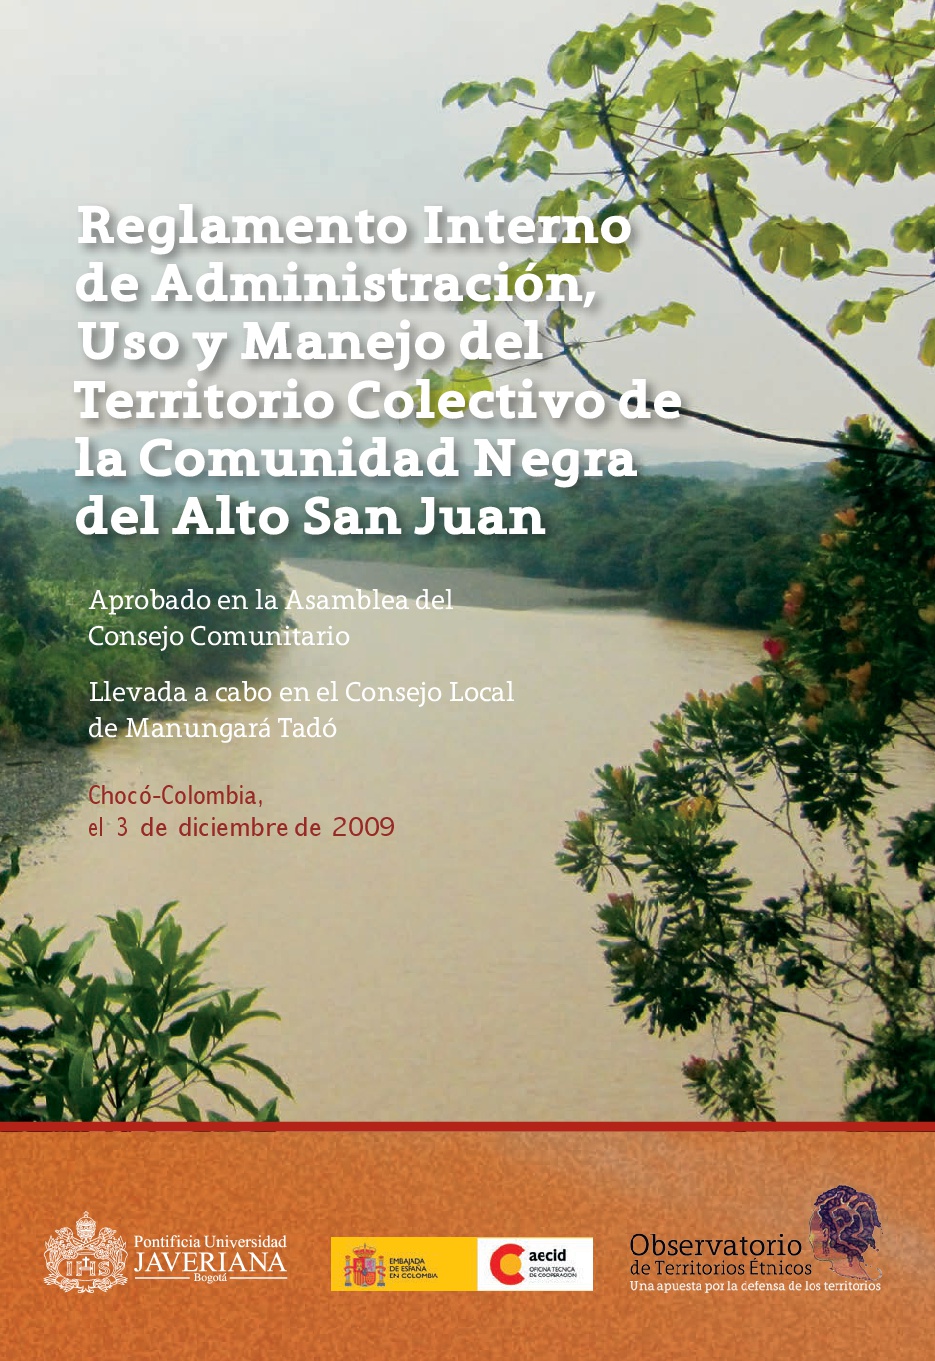 Gráfica alusiva a Reglamento Interno de Administración, Uso y Manejo del Territorio Colectivo de la Comunidad Negra del Alto San Juan